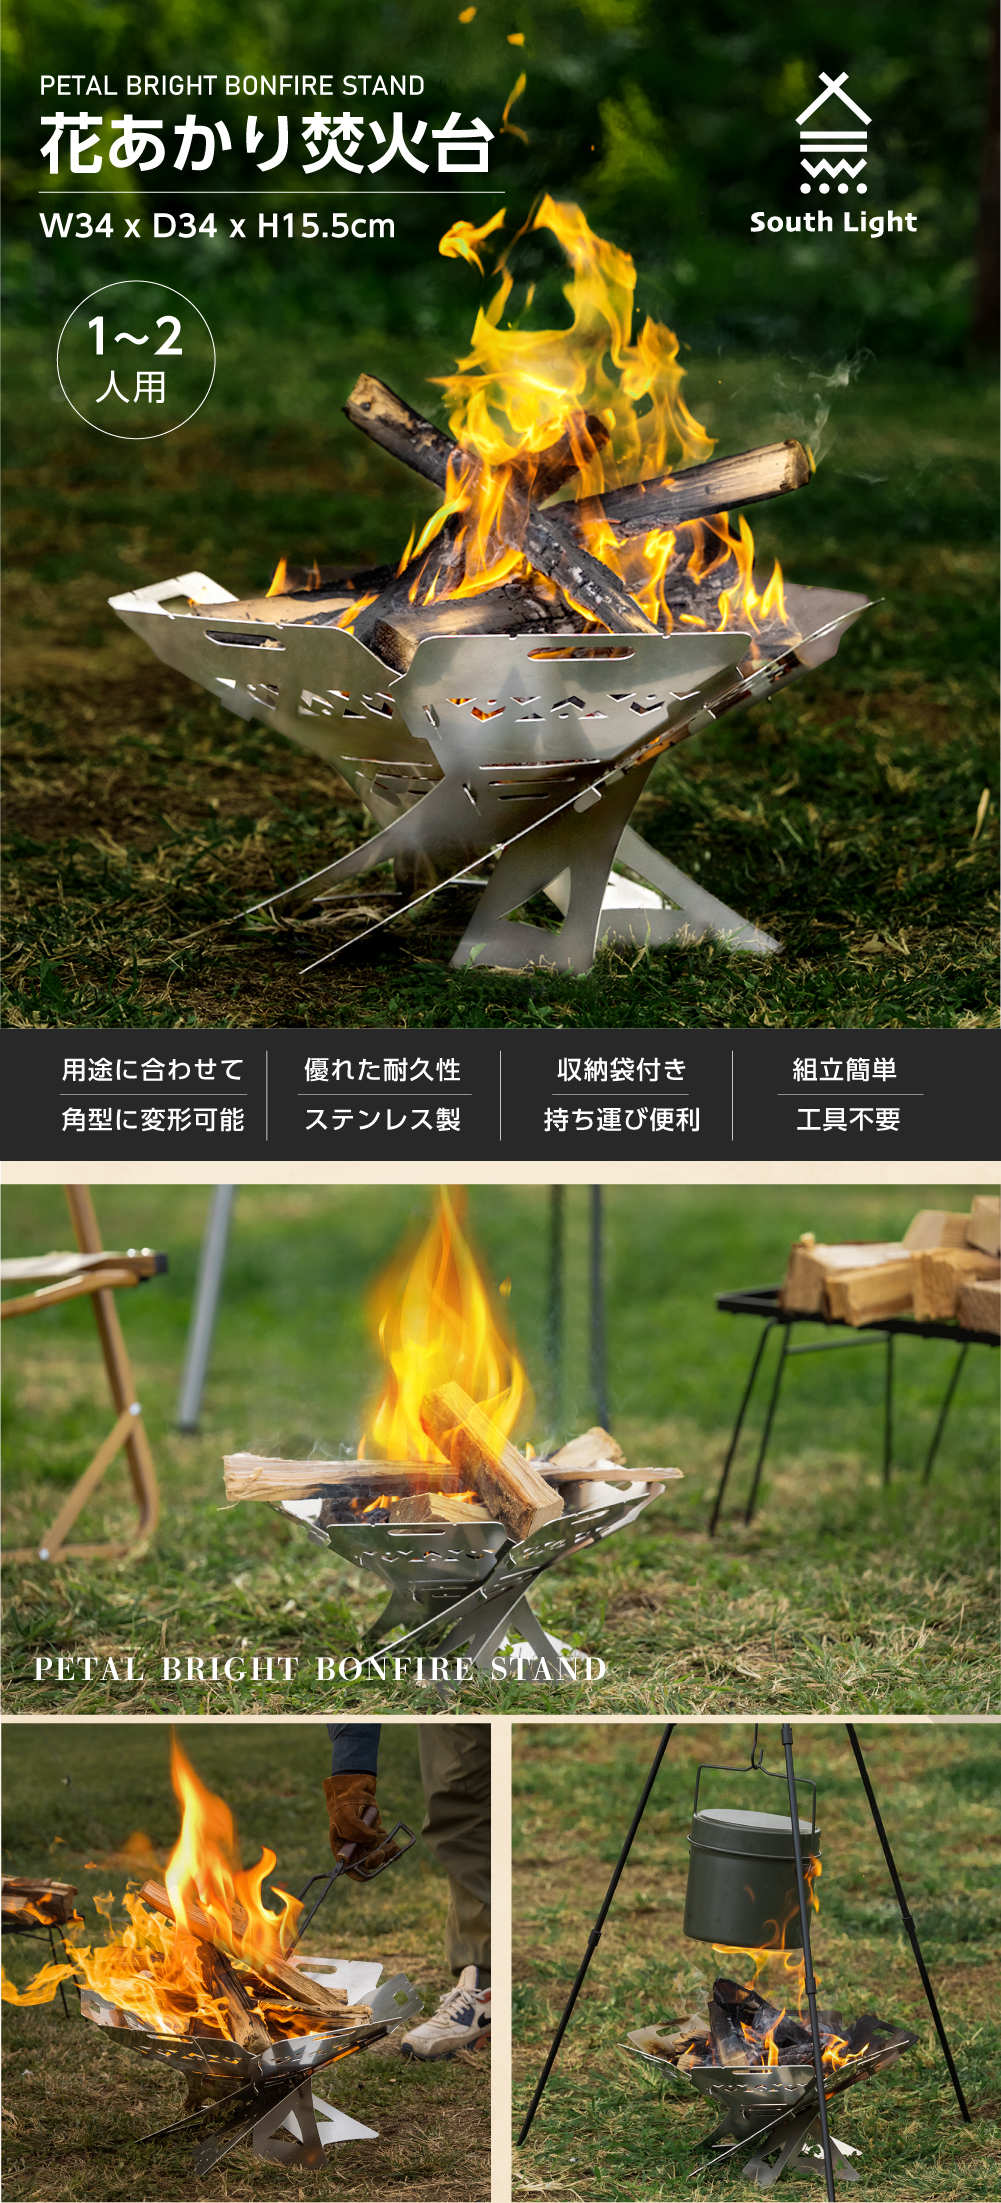 日本製 花あかり焚火台 バーベキューコンロ 料理用コンロ BBQ 薪 1-2人